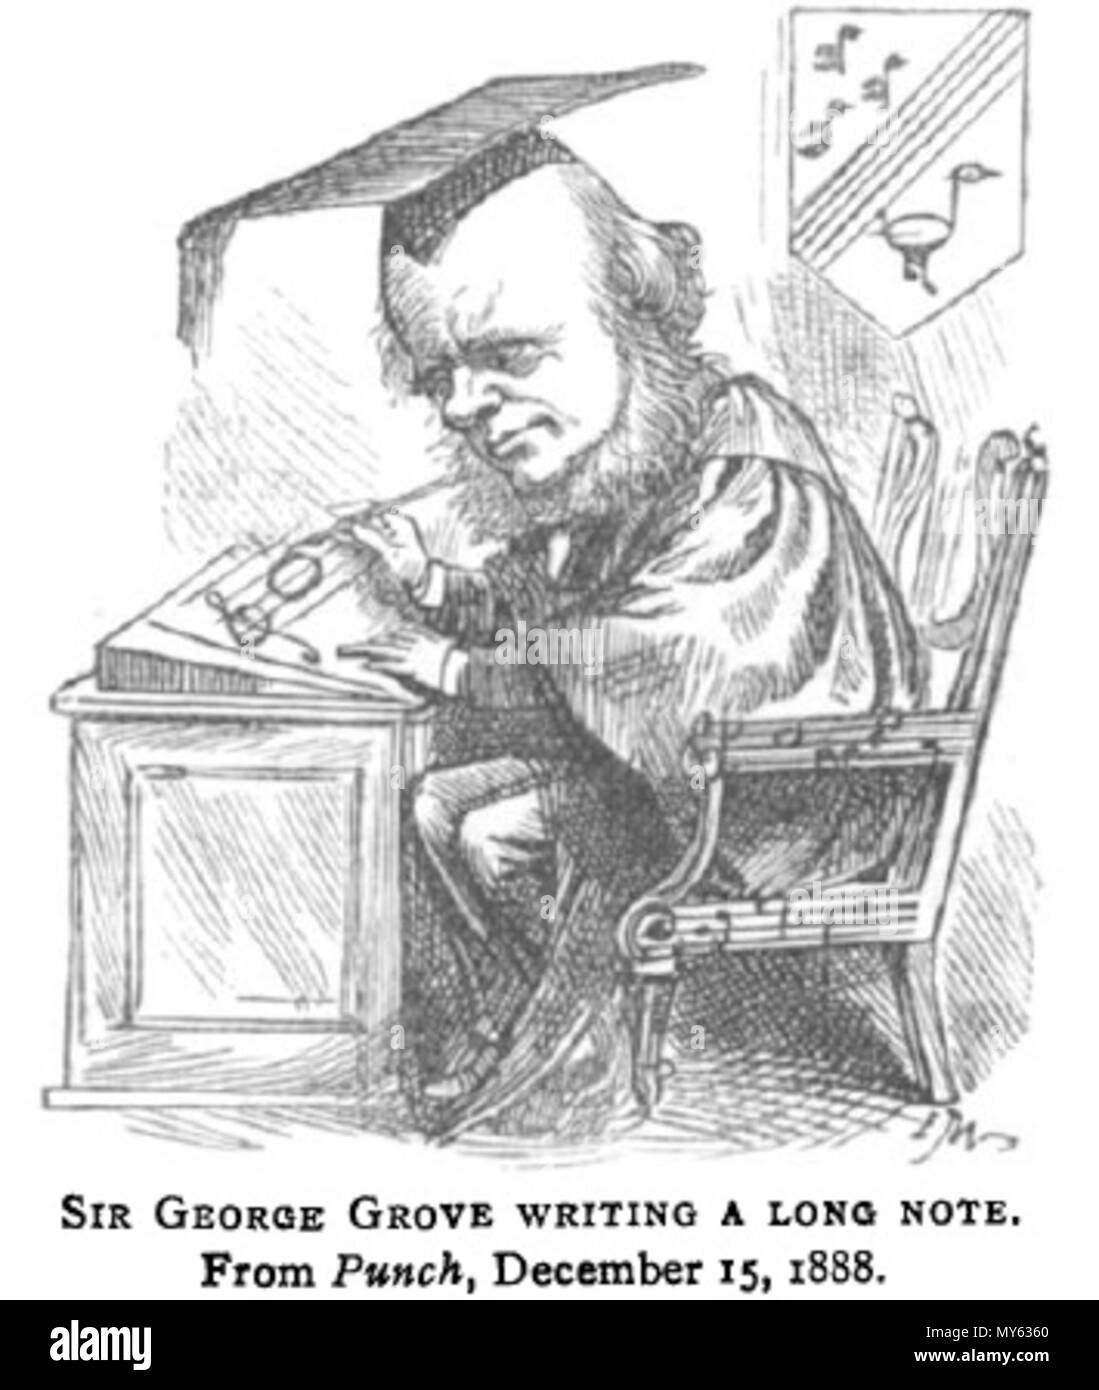 . Englisch: Karikatur von George Grove als Leiter der Königlichen Hochschule für Musik. 15. Dezember 1888. Nicht identifiziert 207 George - Grove - Karikatur Stockfoto